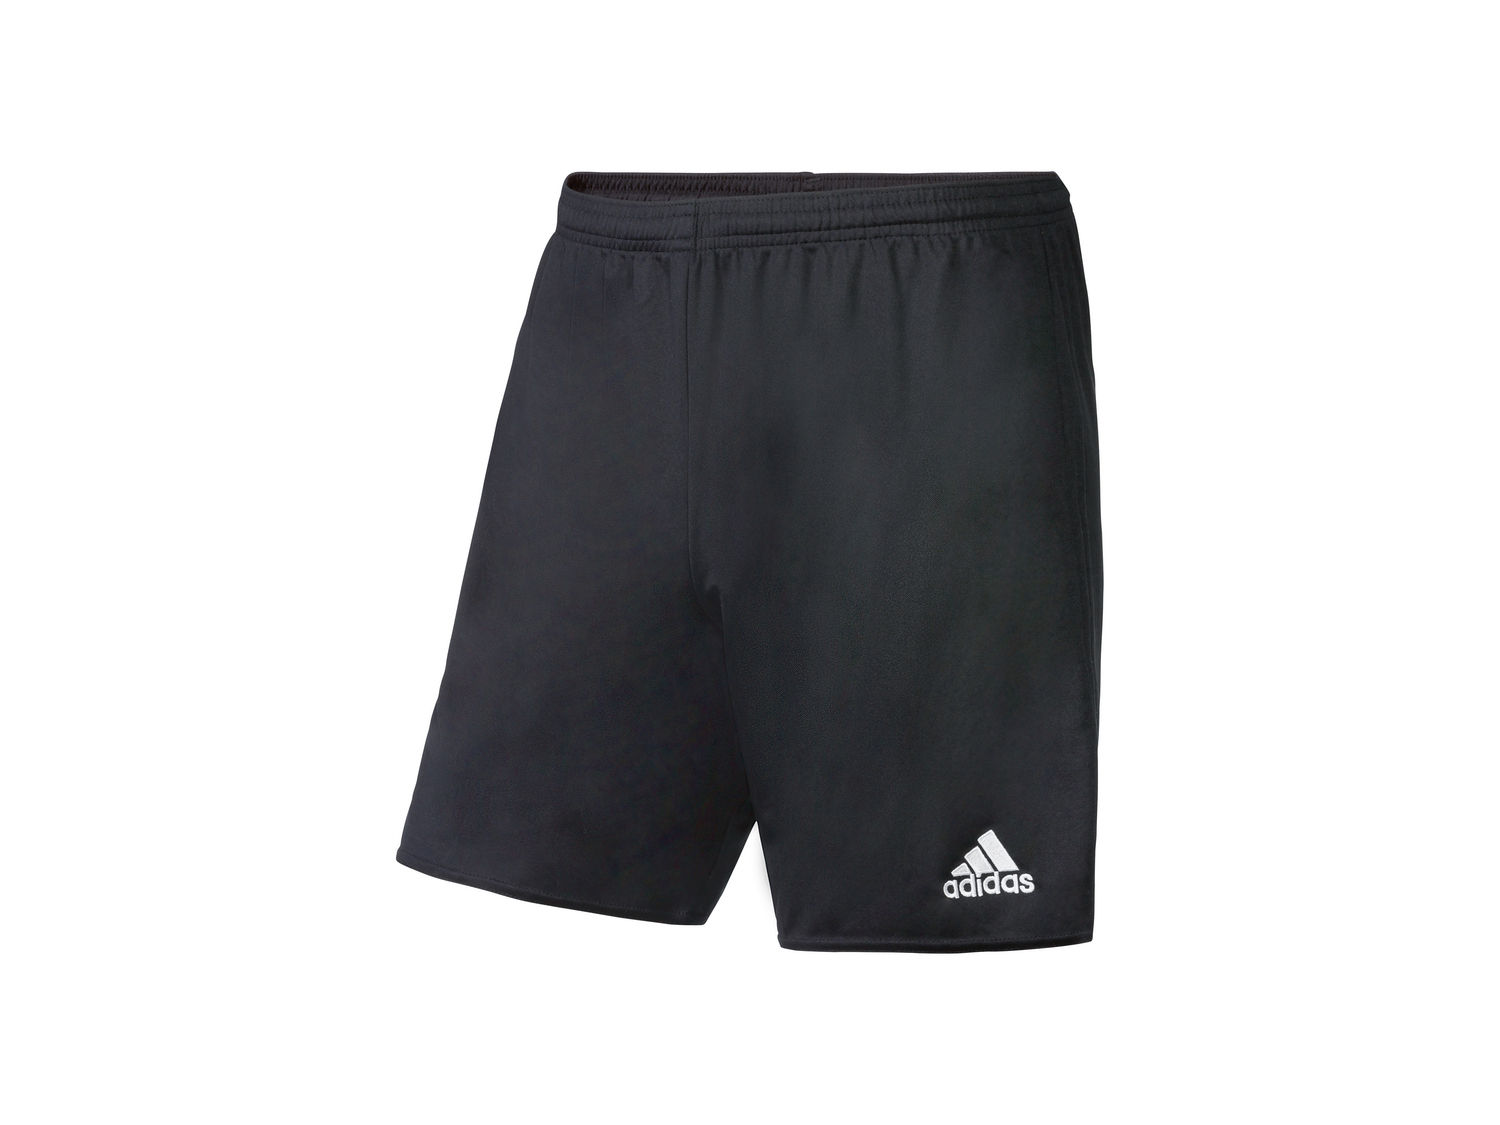 Shorts sportivi da uomo Adidas, prezzo 11.99 € 
Misure: M-XXL
Taglie disponibili

Caratteristiche ...